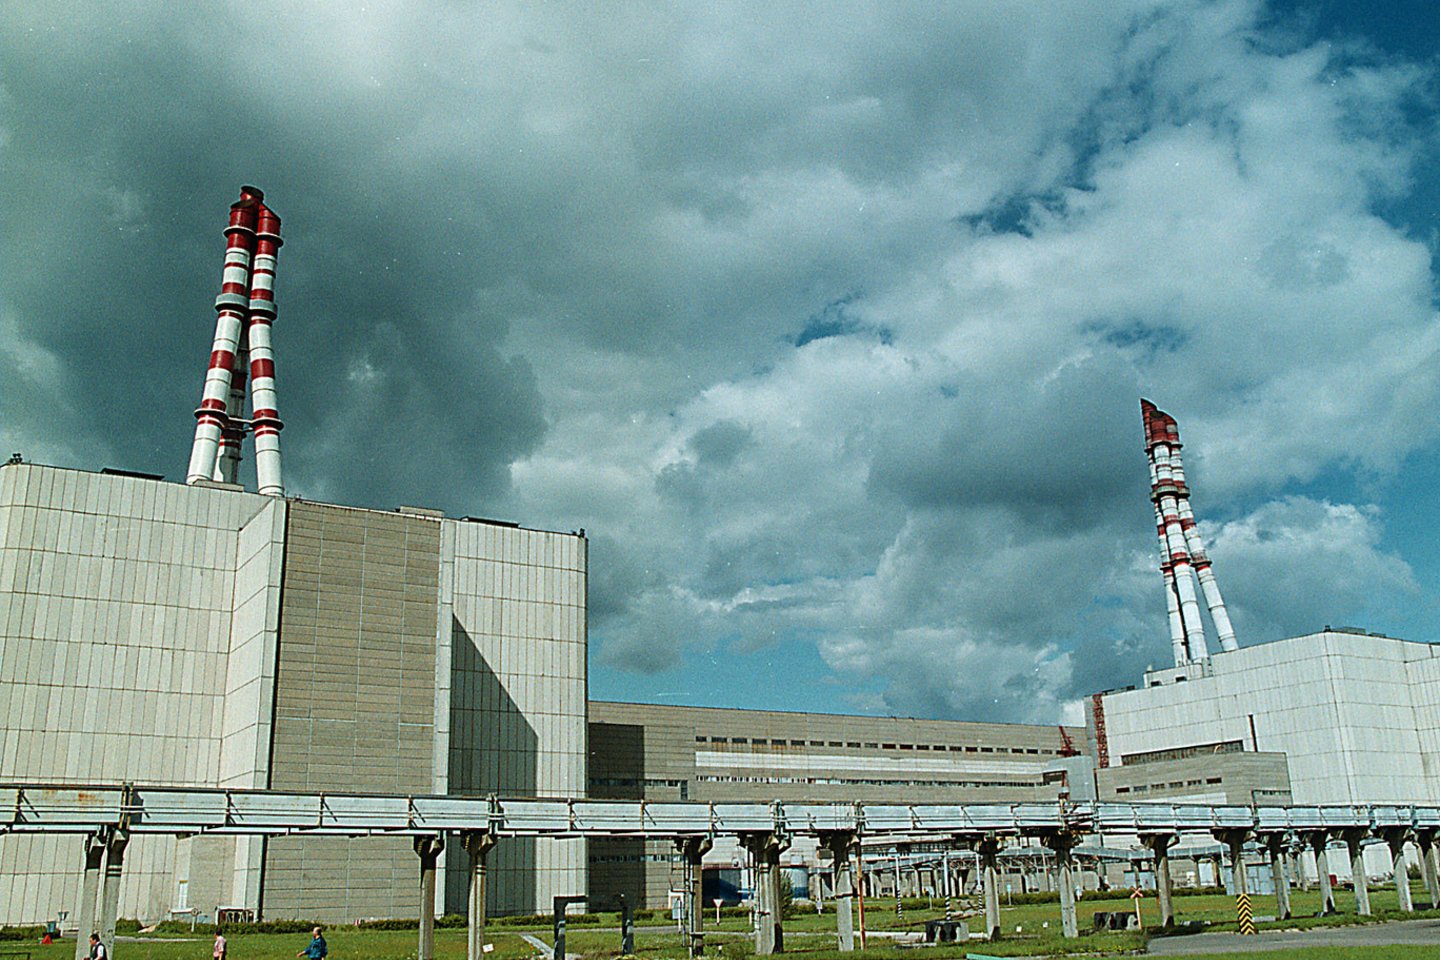 1983 m. pradėjo veikti Ignalinos atominė elektrinė, kuri turėjo galingiausius reaktorius pasaulyje. Buvo didžiausia Lietuvos elektrinė, gamino apie 80 proc. visos šalyje suvartojamos elektros energijos, dalis jos buvo eksportuojama. Lietuvai vykdant stojimo į Europos Sąjungą sutartyje numatytus įsipareigojimus 2009 m. gruodžio 31 d. elektrinė visiškai nutraukė elektros energijos gamybą.<br>R.Jurgaičio nuotr.